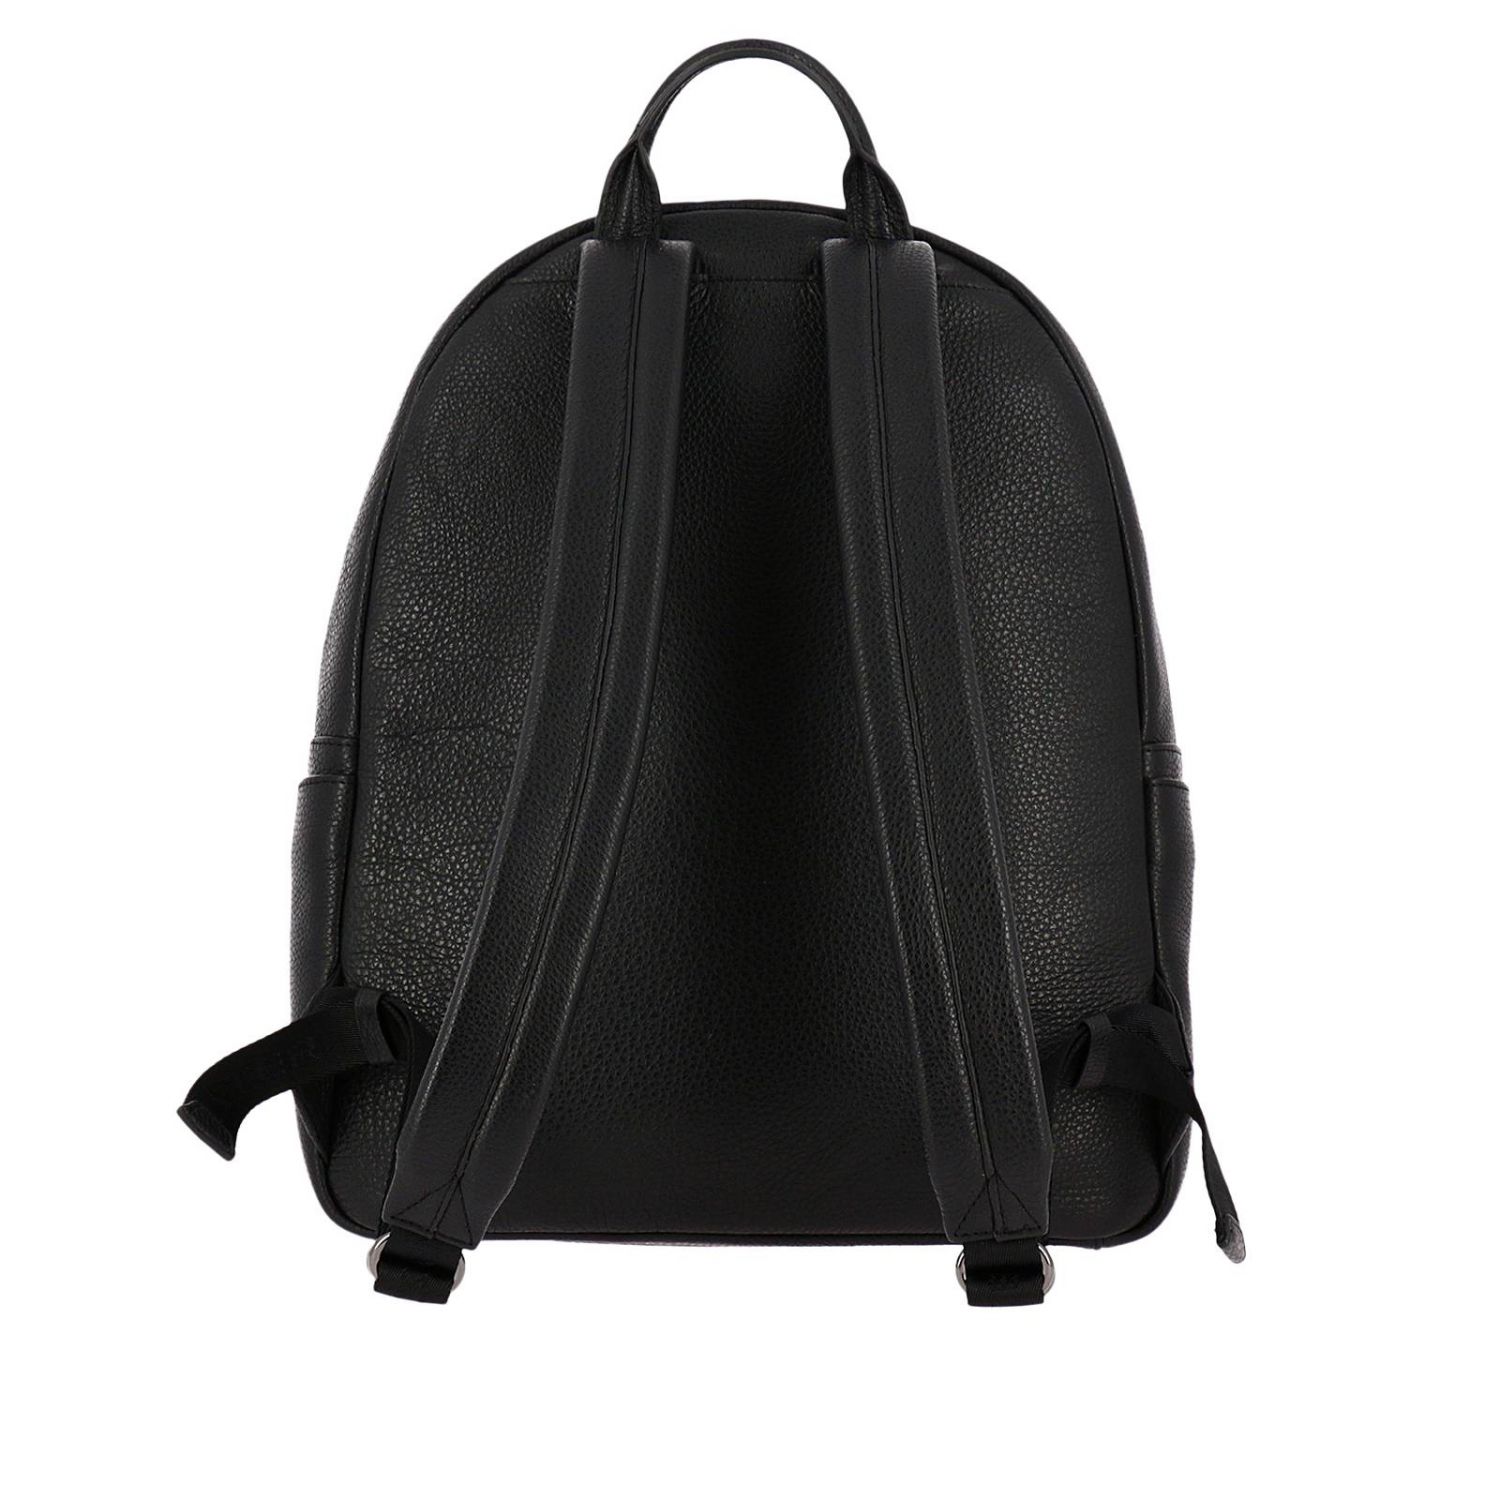 Lancaster Paris Outlet: Shoulder bag women - Black | Backpack Lancaster ...